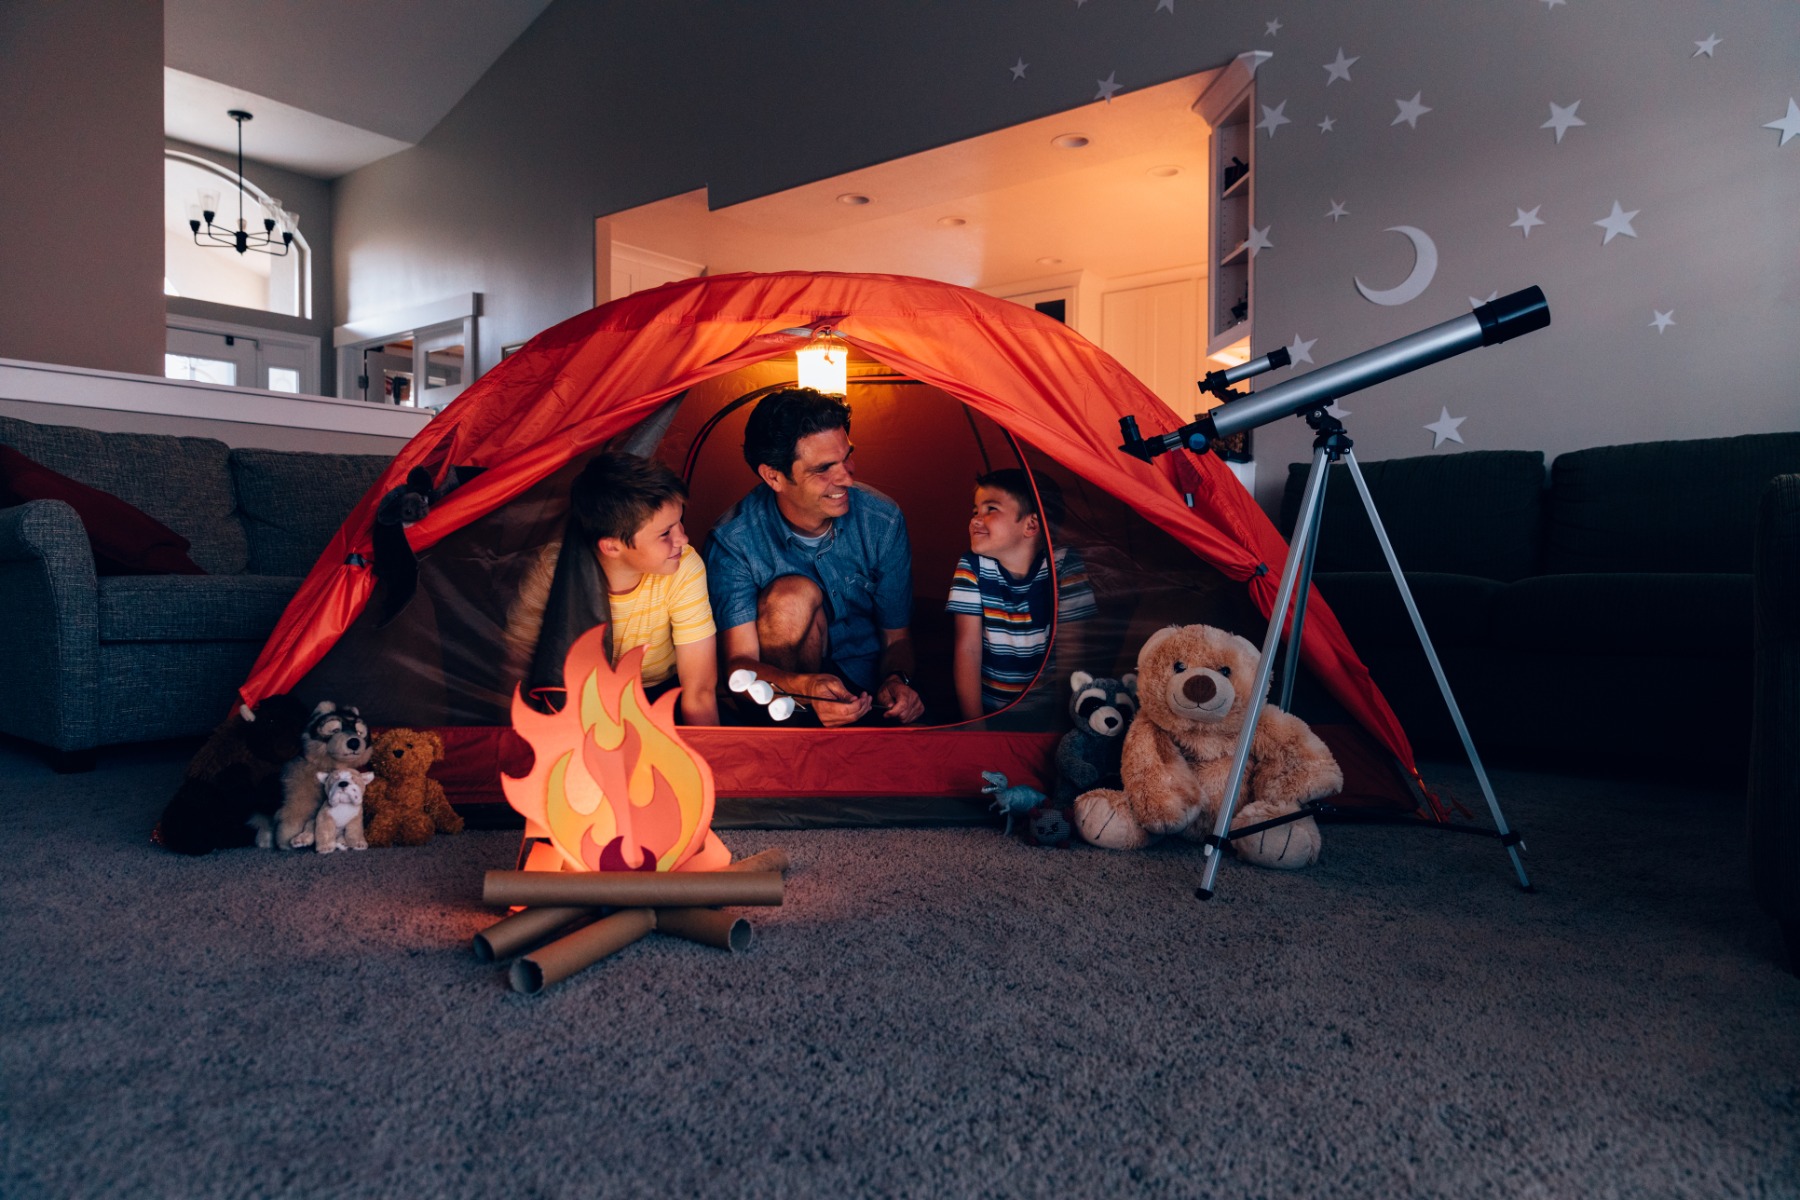 Ein Vater spielt mit seinen zwei Söhnen im Wohnzimmer in einem roten Zelt und mit einem Karton-Lagerfeuer.